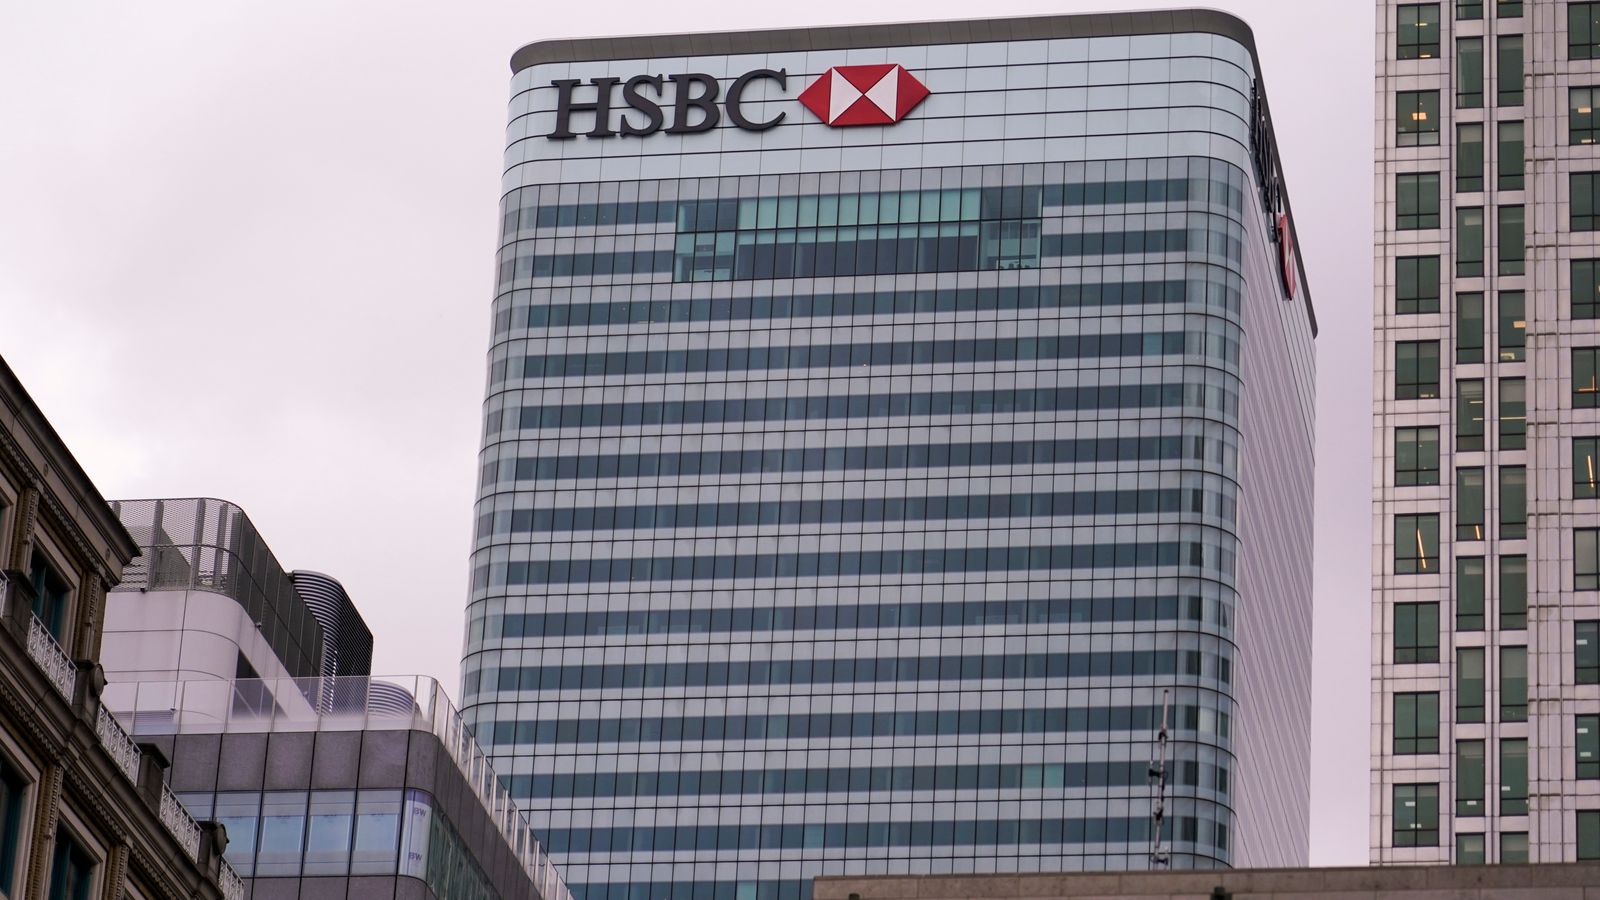 Le patron de HSBC, Quinn, démissionnera après cinq années « intenses » alors que les bénéfices diminuent |  Actualité économique